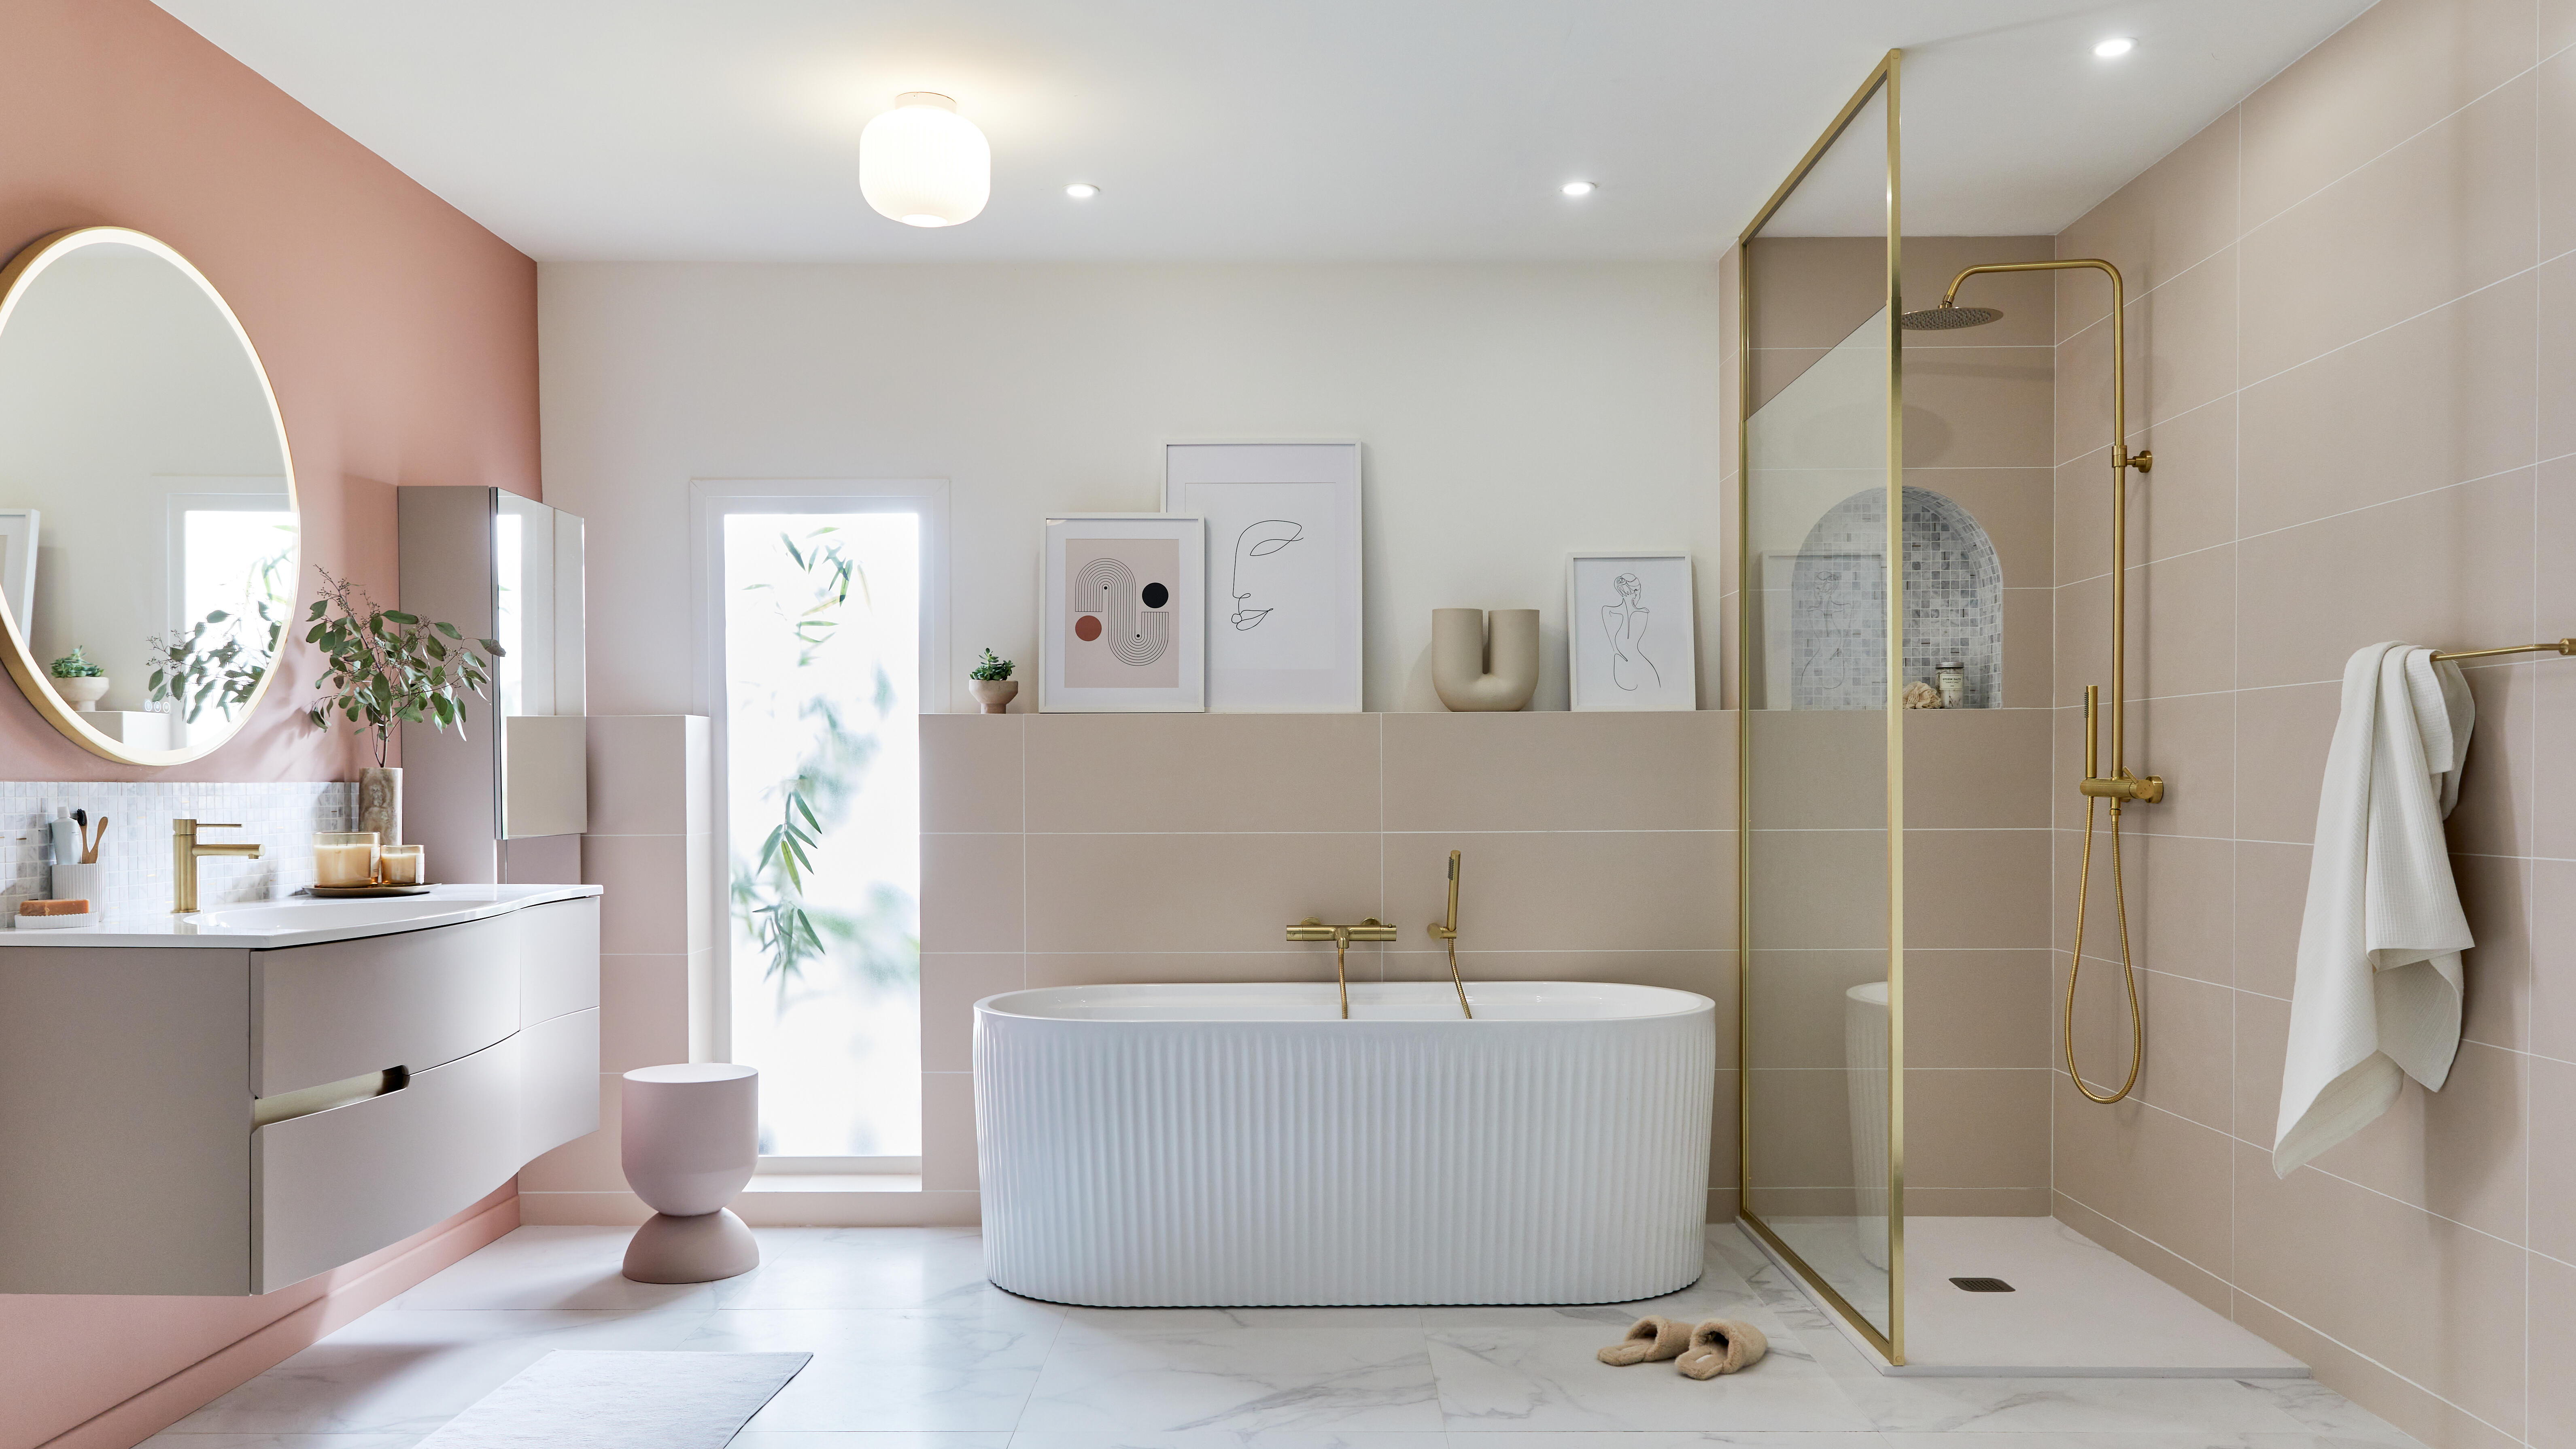 Salle de bains moderne : 10 belles inspirations à copier - Marie Claire